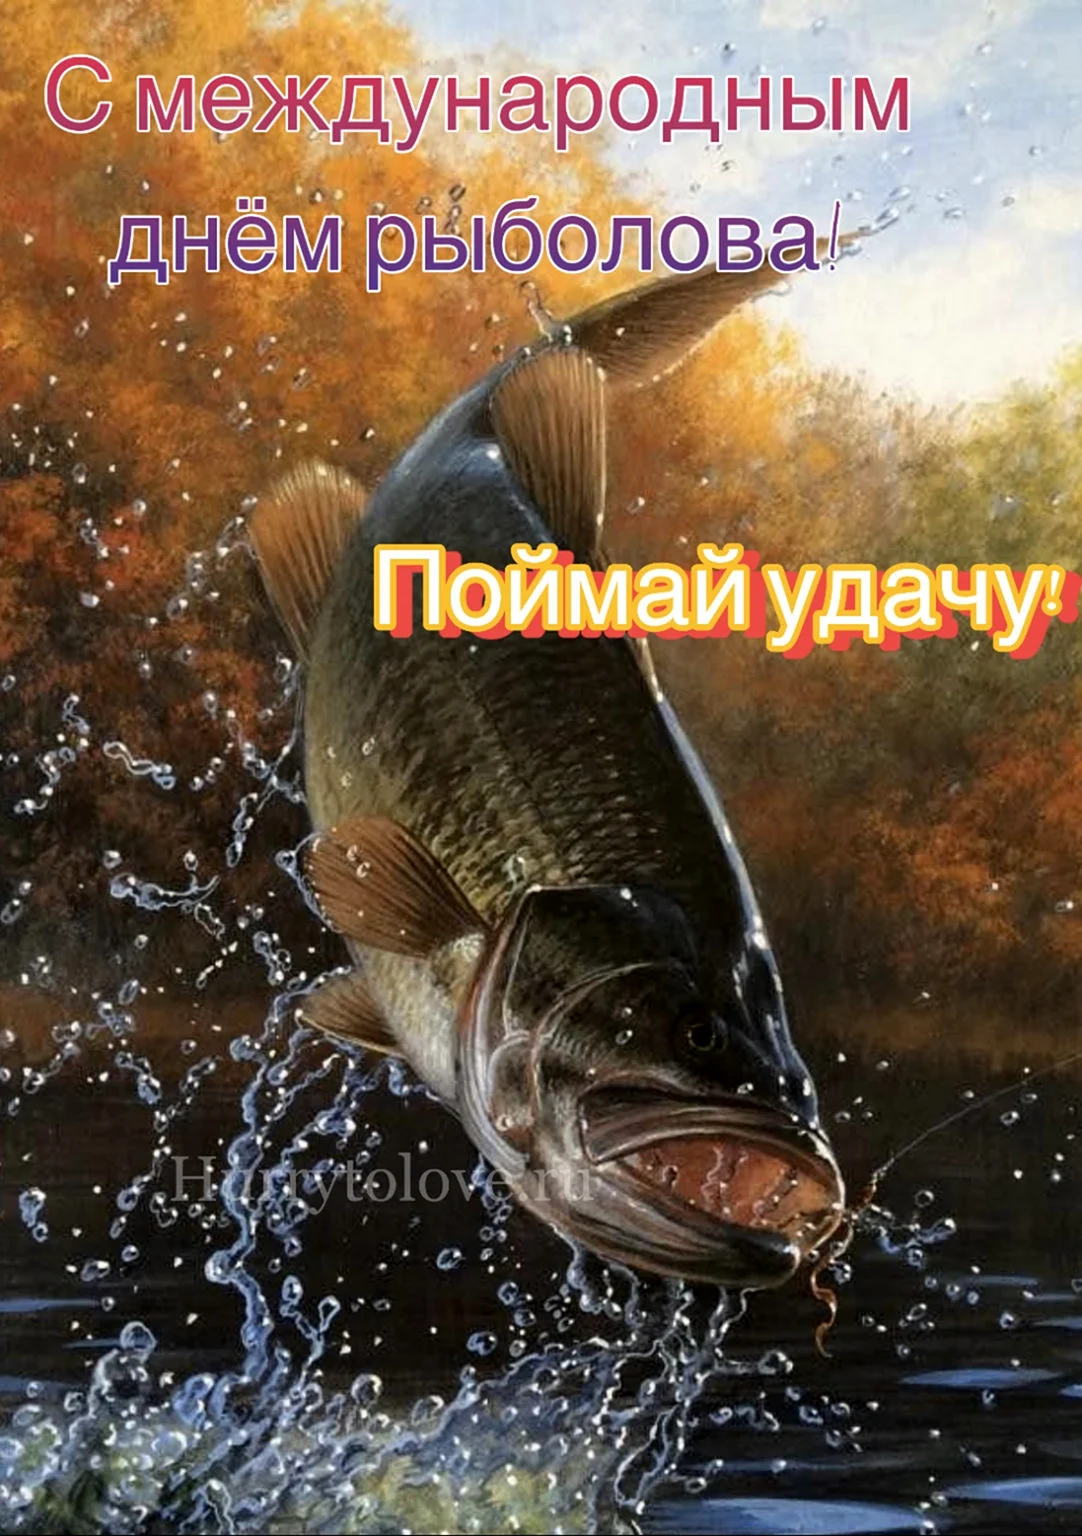 Всемирный день рыболовства поздравления открытка